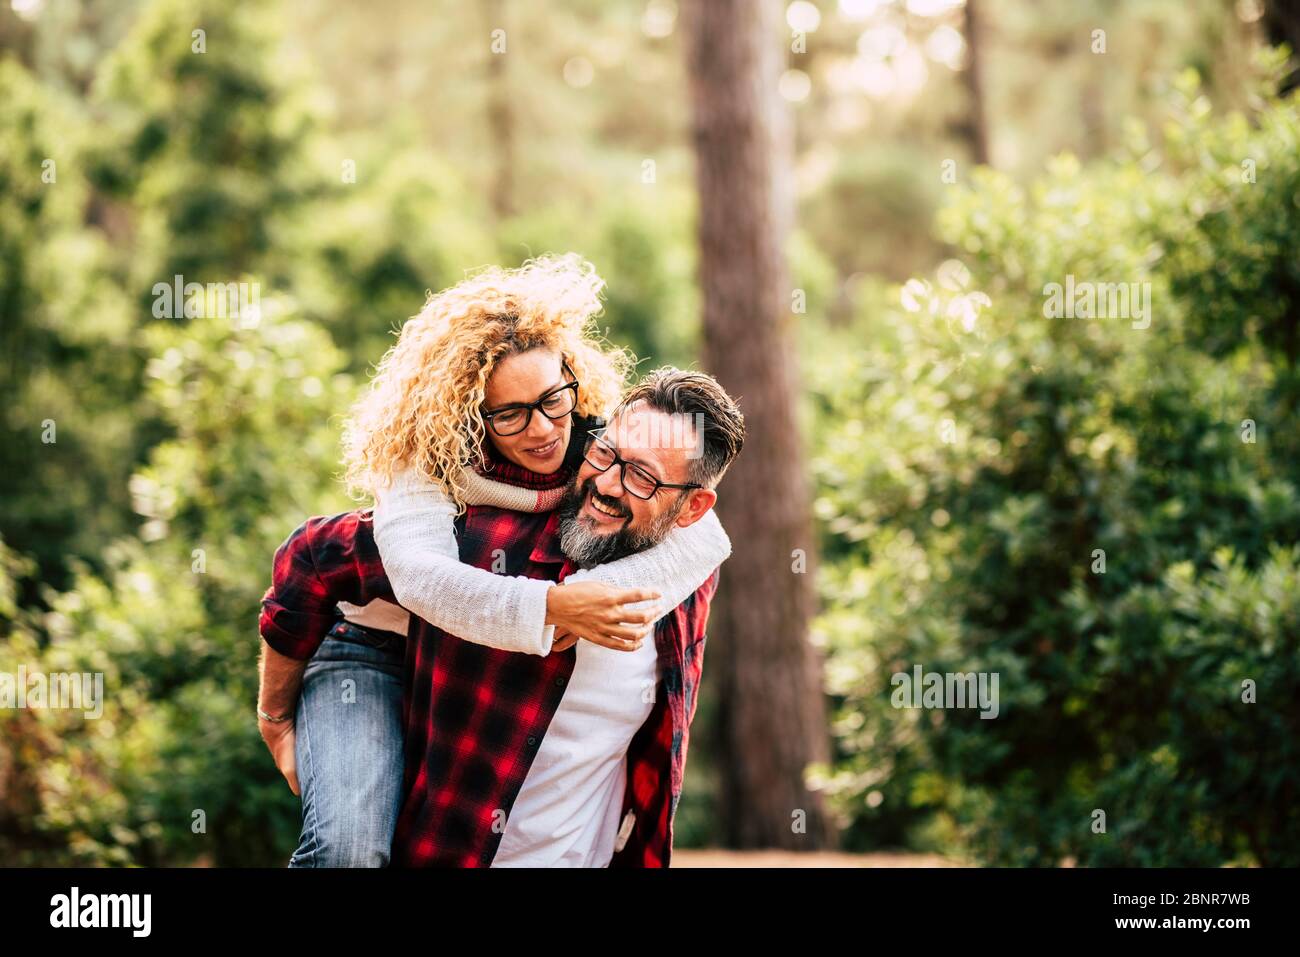 Felice coppia caucasica adulto in relazione e amore giocare insieme nella natura foresta - persone outdoor attività di svago concetto con allegri caucasici Foto Stock